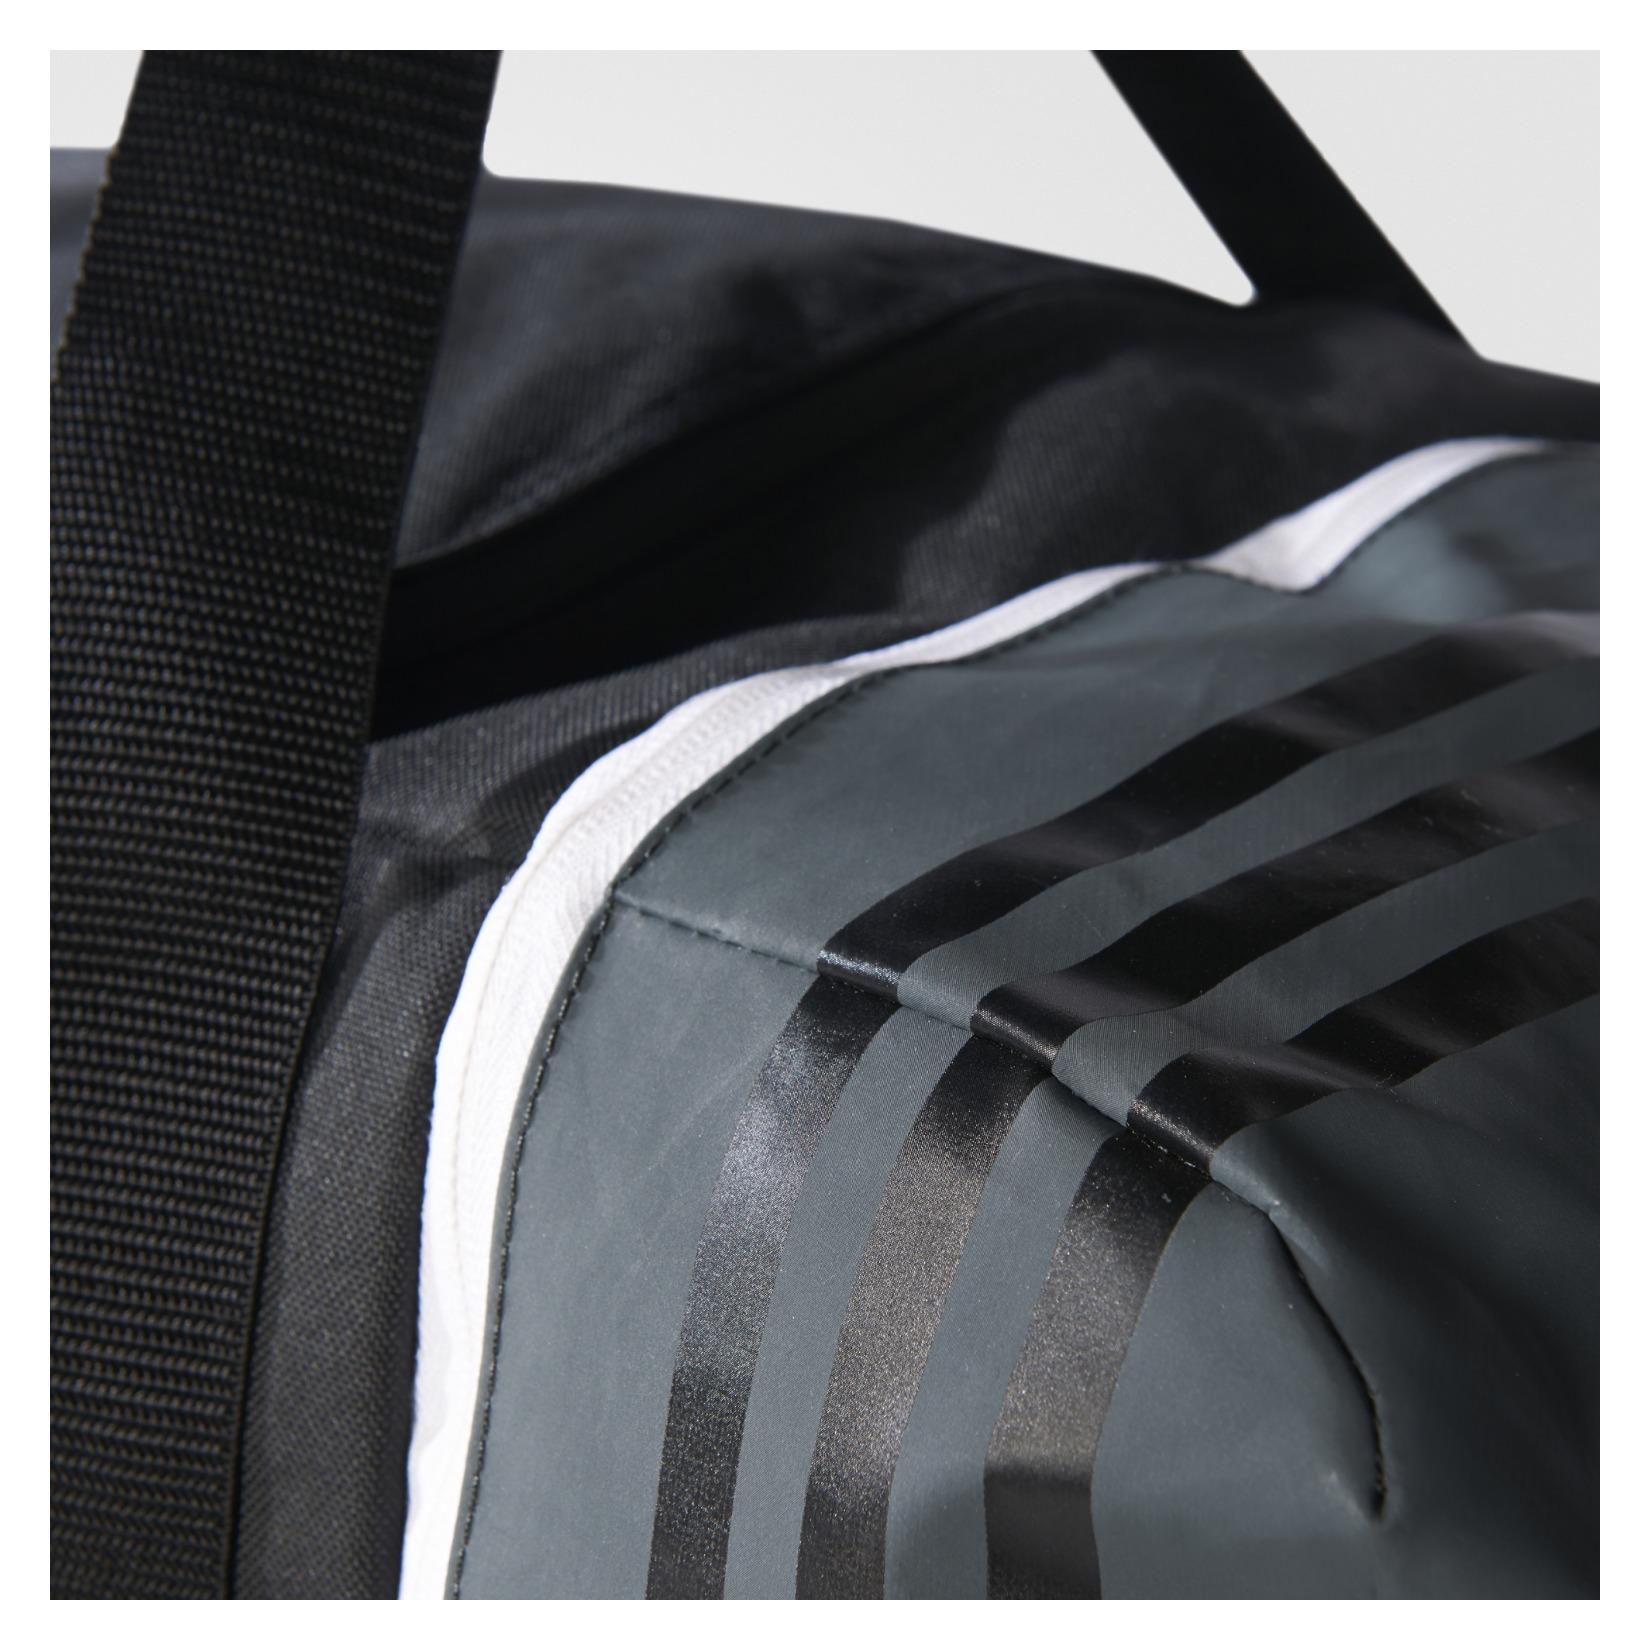 Adidas Tiro Teambag M